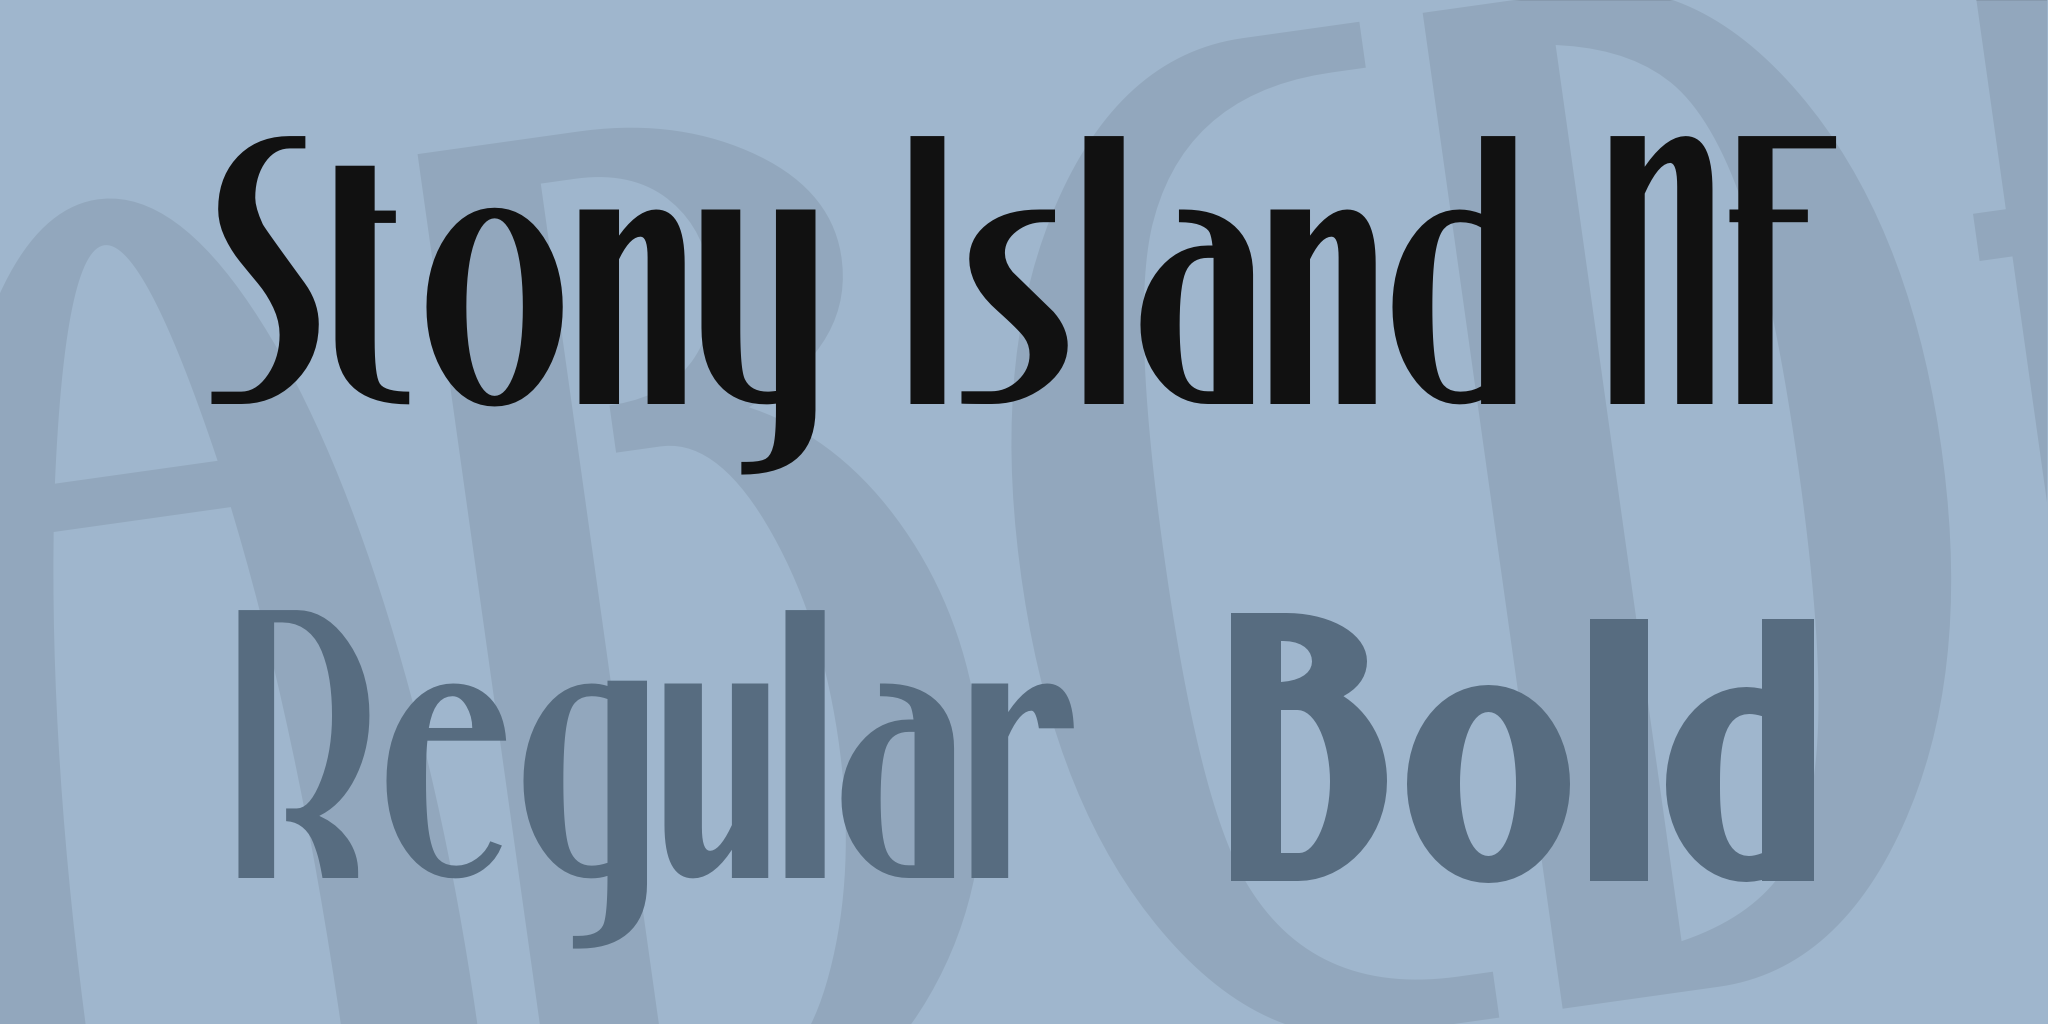 Stony Island Nf